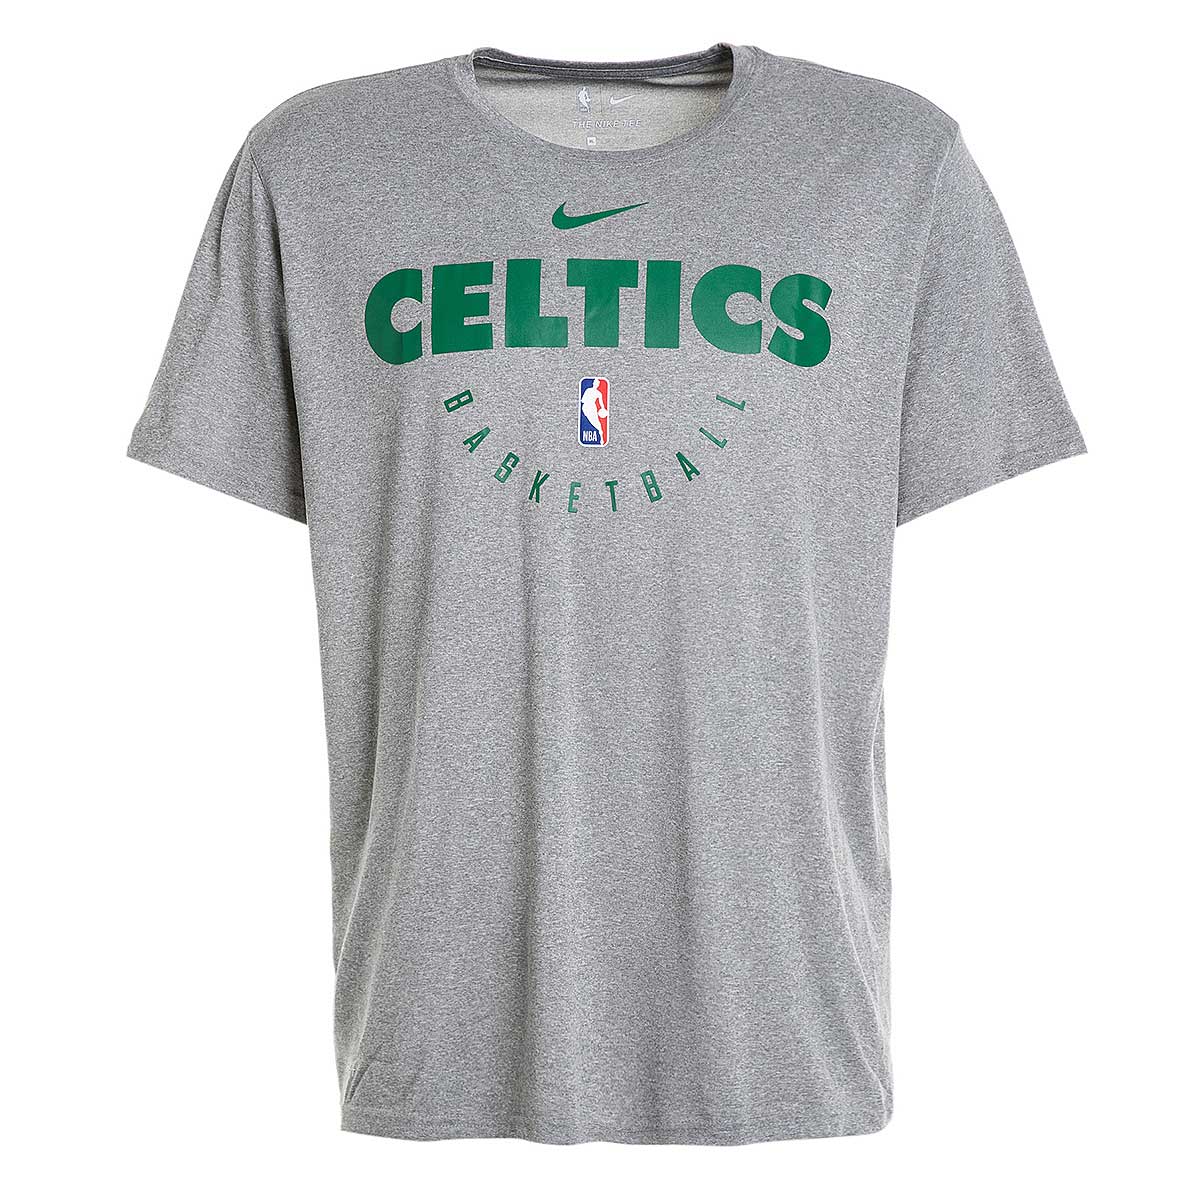 Men's Nike White Boston Celtics 2021-2022 Spotlight On Court Performance  Practice Pullover Hoodie